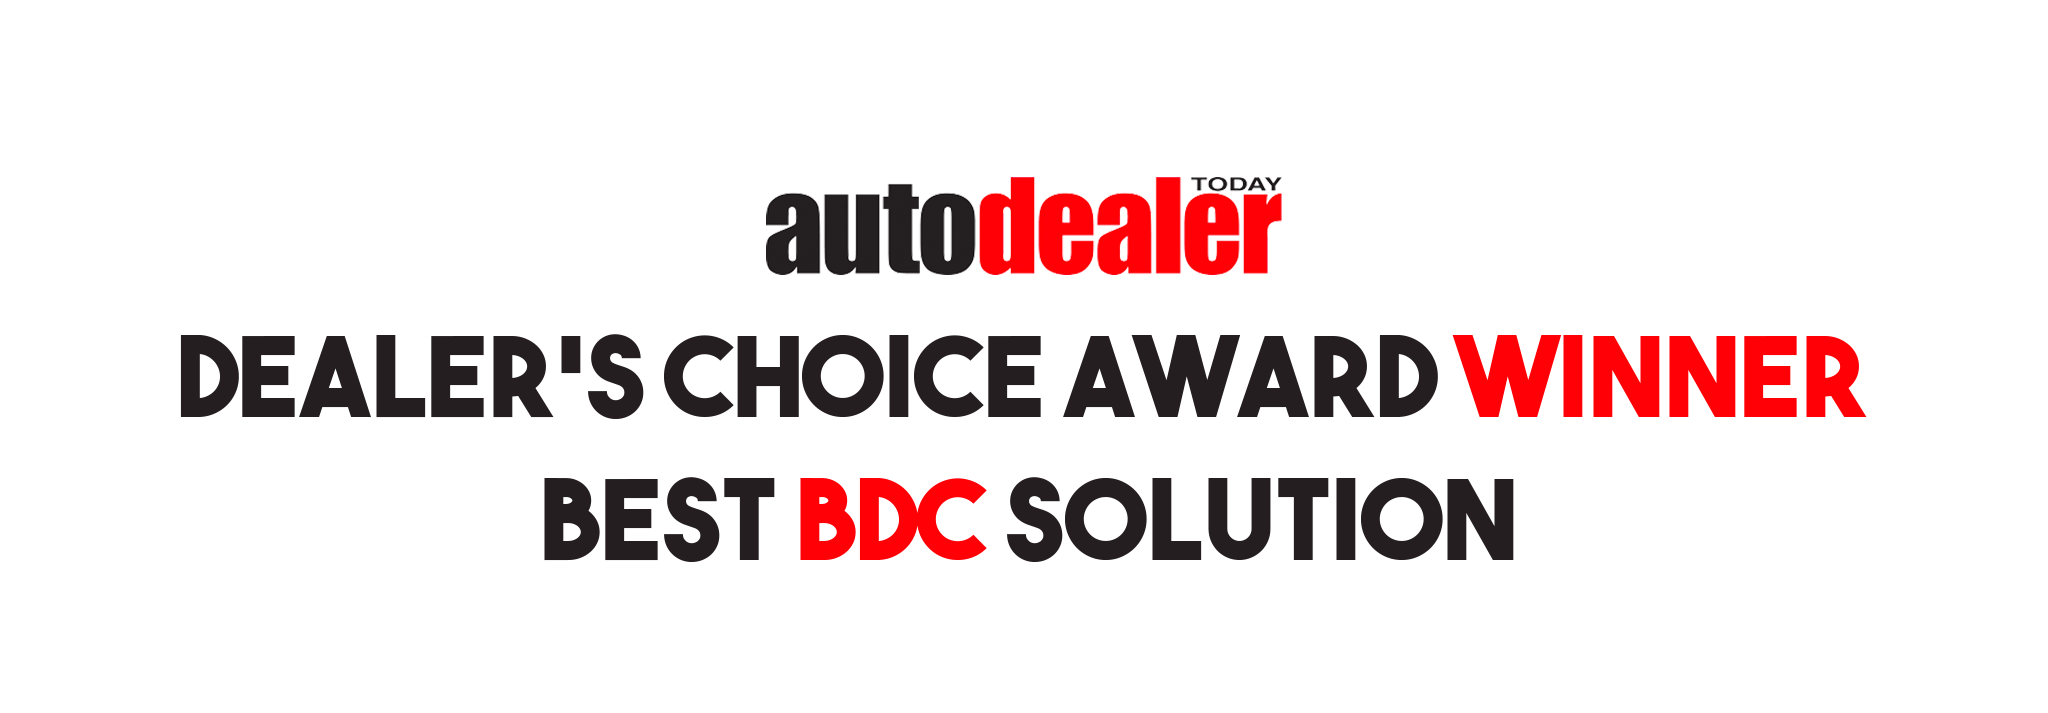 Dealer's Greatest Assets Dealer's Choice Award Winner For Best Automotive BDC Solution for Dealerships